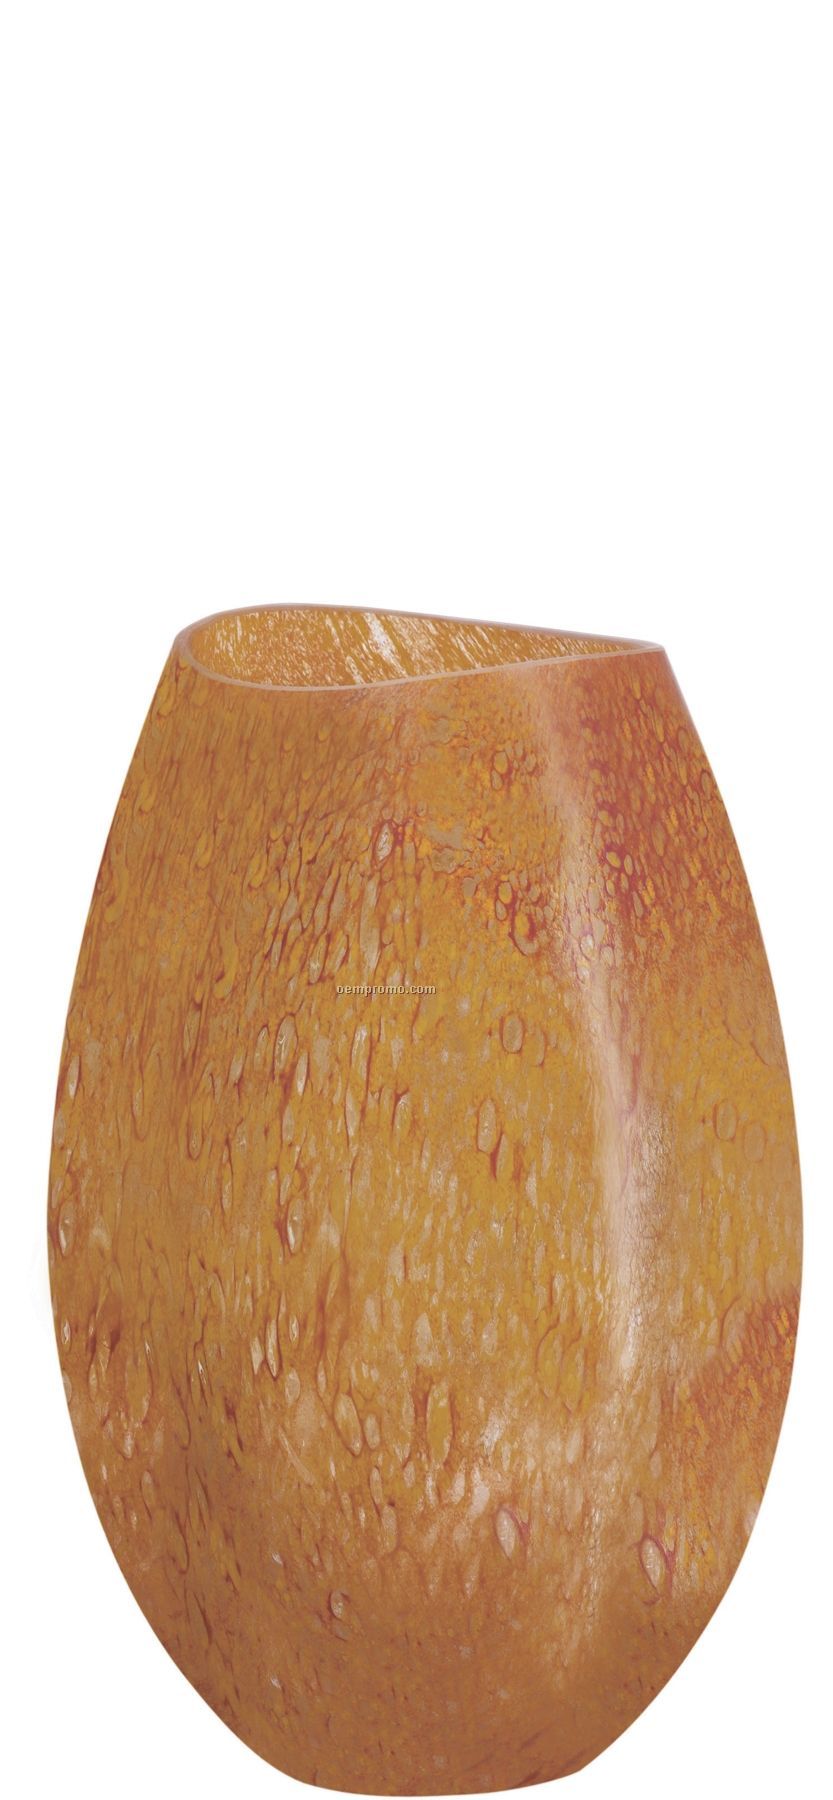 Dino Curved Vase By Kjell Engman (12")